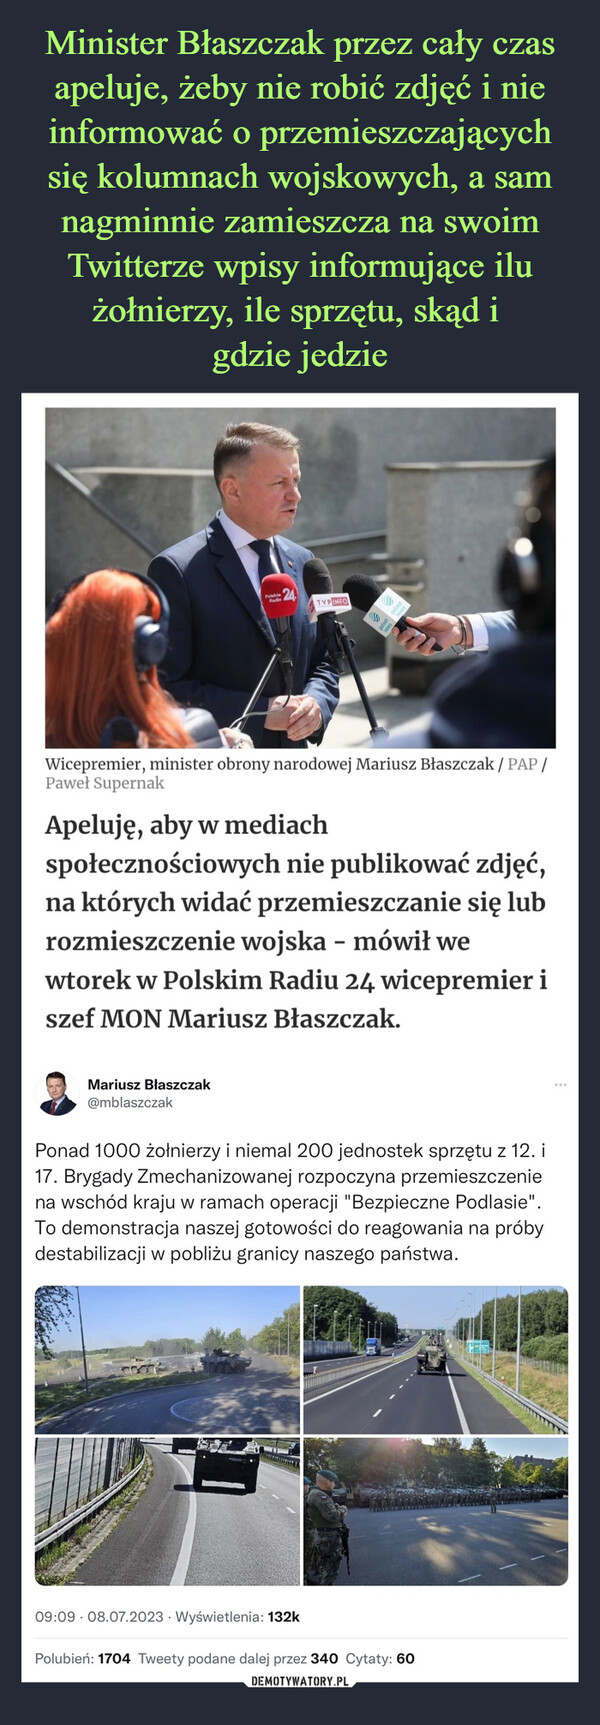 Minister Błaszczak przez cały czas apeluje, żeby nie robić zdjęć i nie informować o przemieszczających się kolumnach wojskowych, a sam nagminnie zamieszcza na swoim Twitterze wpisy informujące ilu żołnierzy, ile sprzętu, skąd i 
gdzie jedzie